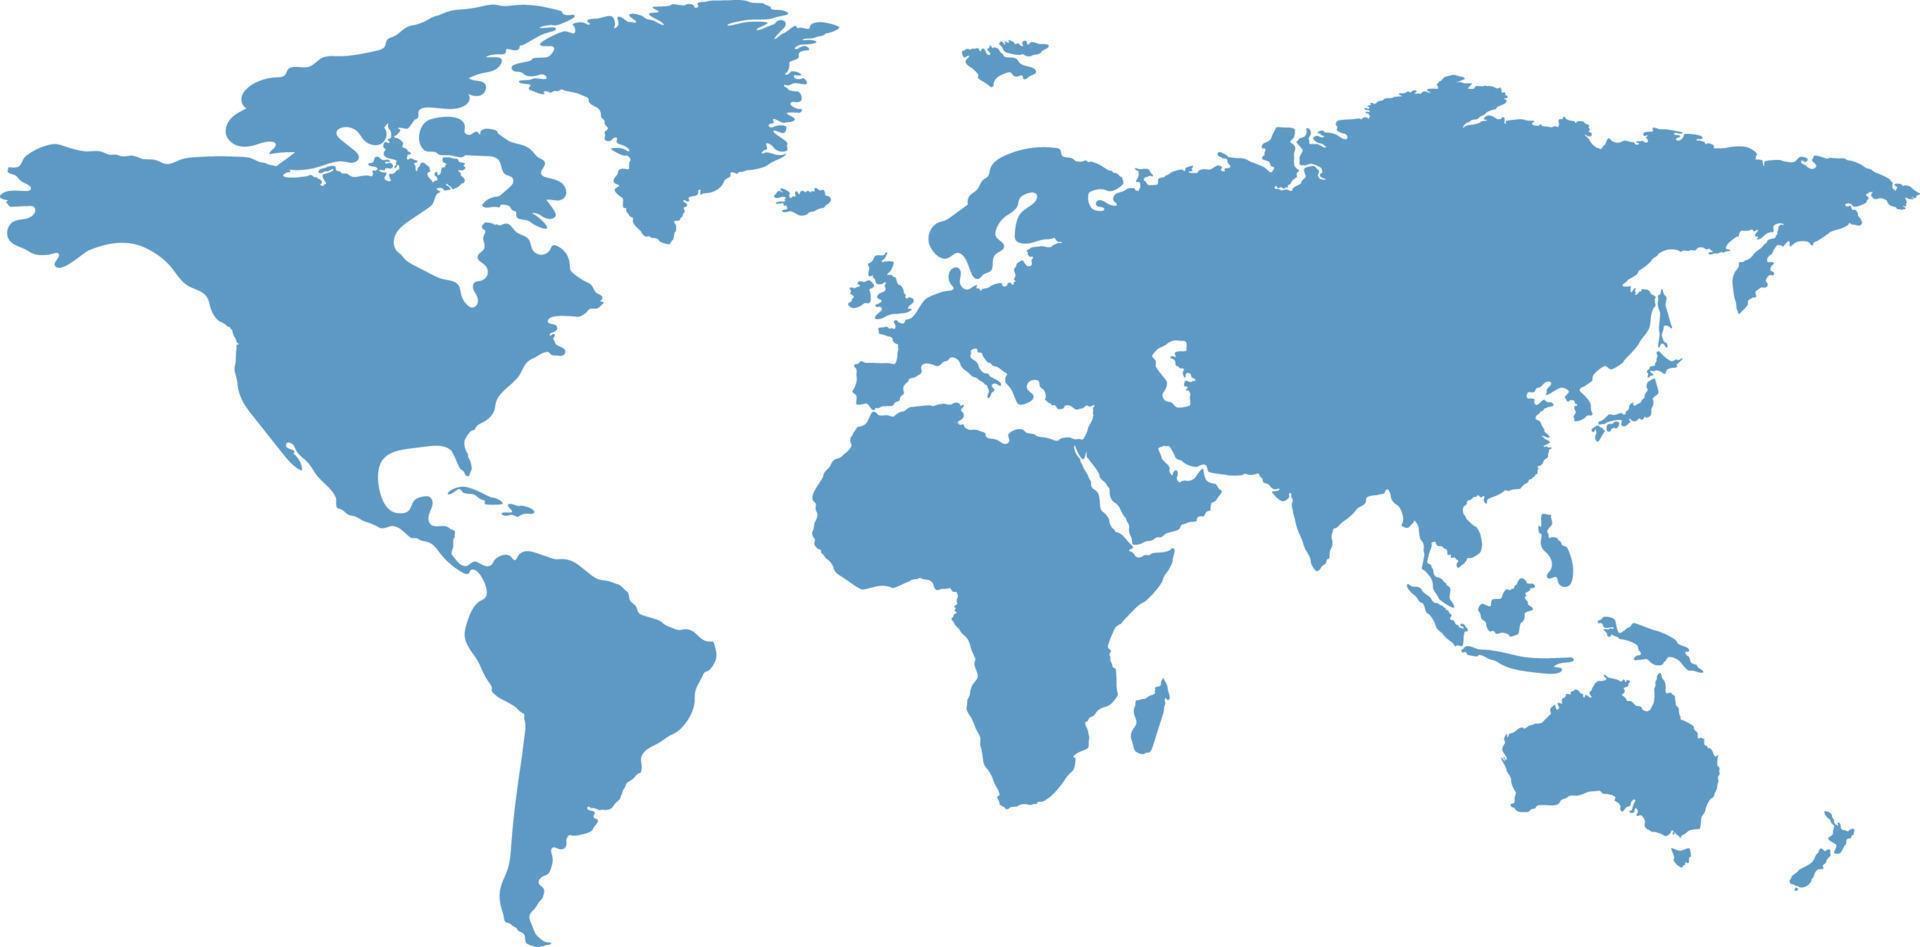 plantilla de mapa mundial con continentes, américa del norte y del sur, europa y asia, áfrica y australia vector